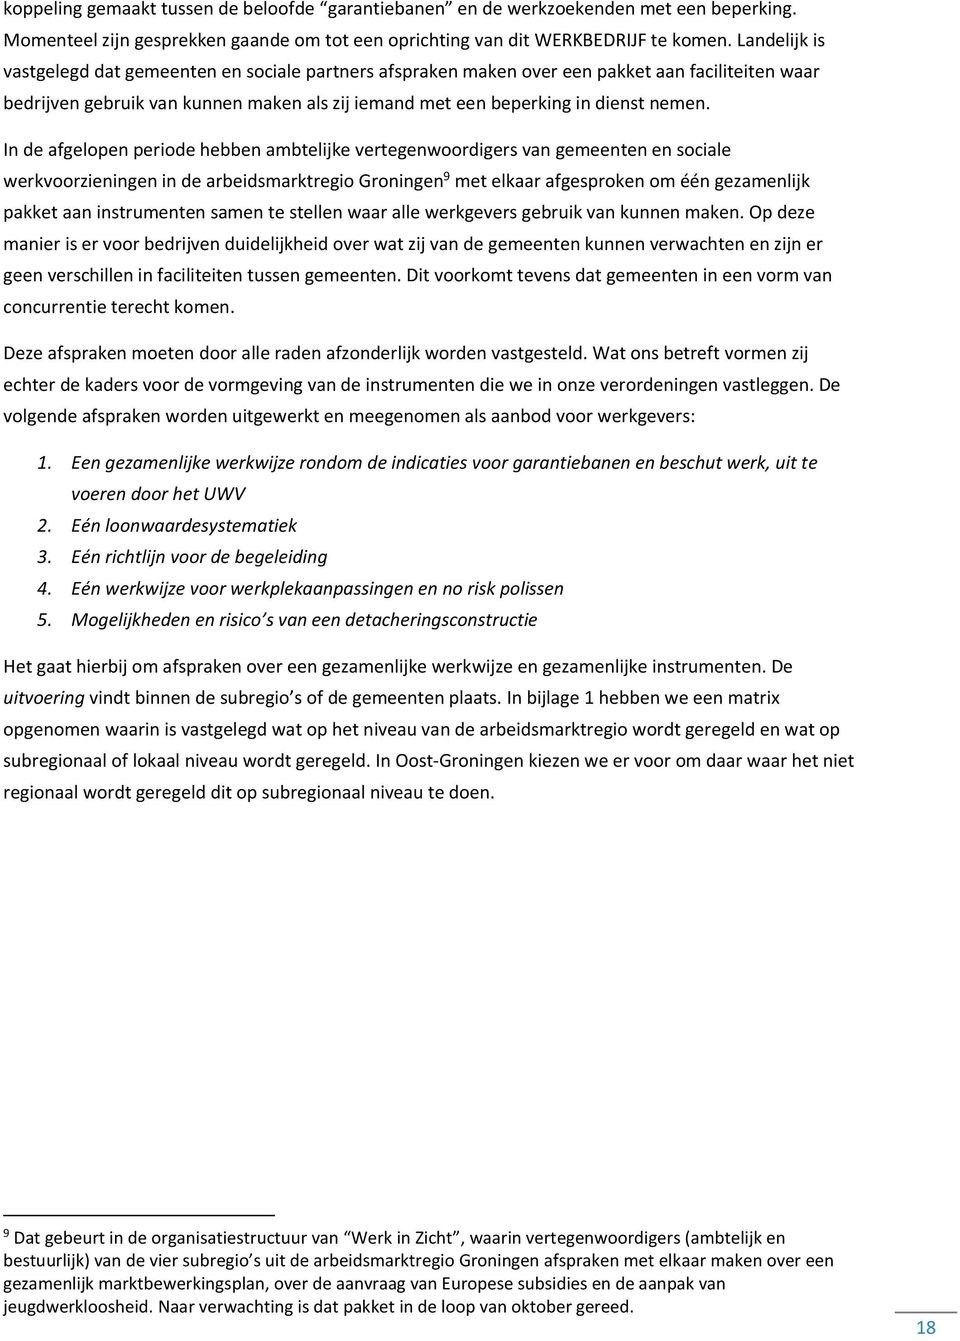 In de afgelopen periode hebben ambtelijke vertegenwoordigers van gemeenten en sociale werkvoorzieningen in de arbeidsmarktregio Groningen 9 met elkaar afgesproken om één gezamenlijk pakket aan